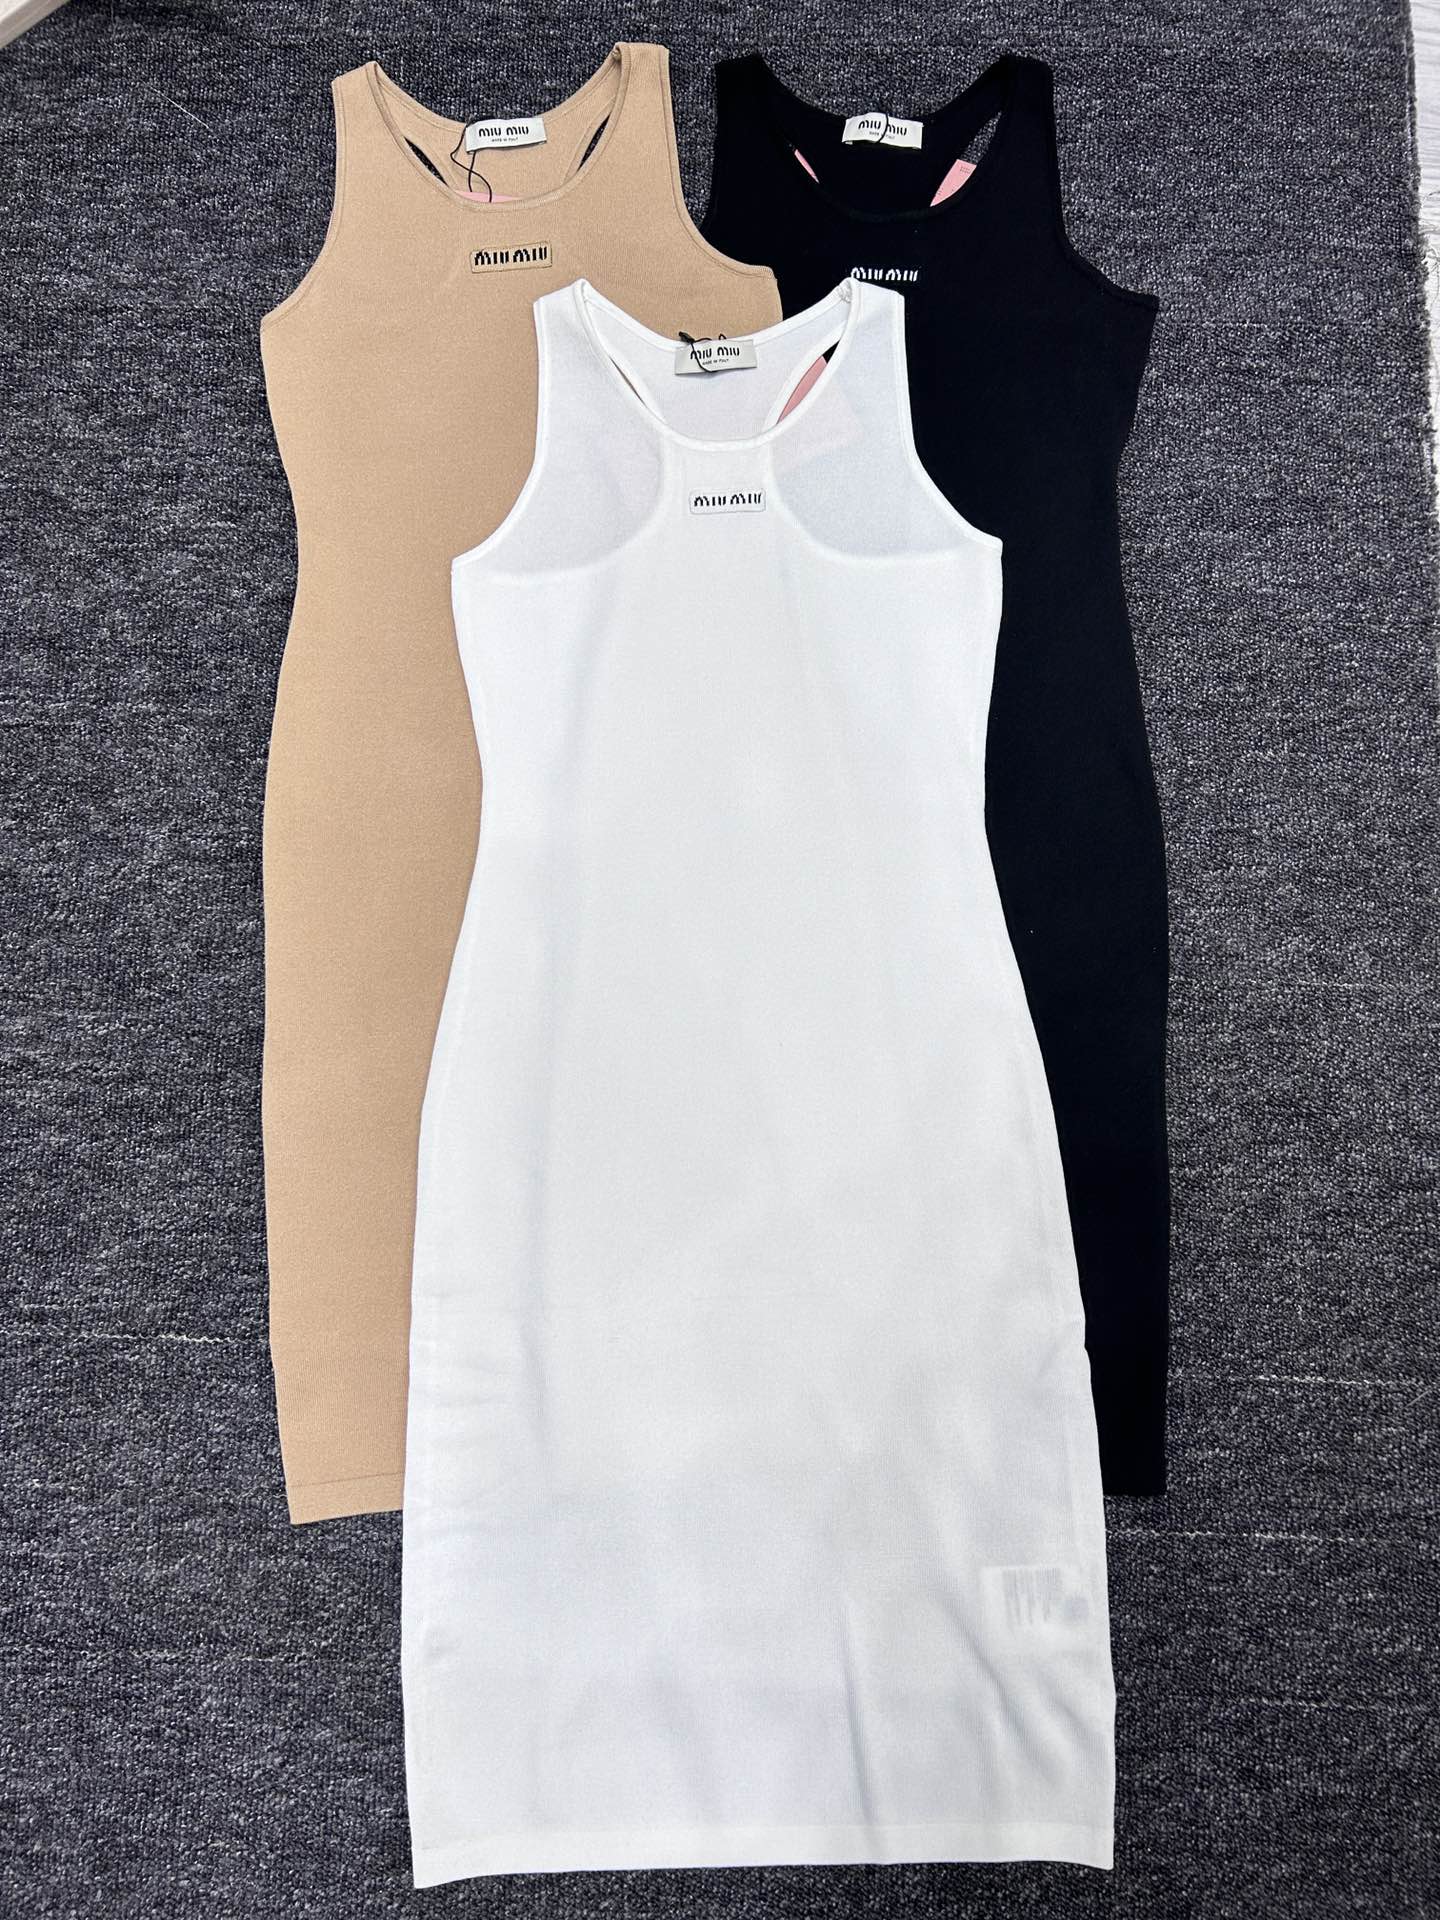 miumiu新款胸前字母徽标无袖修身针织背心连衣裙SML3色3码现货